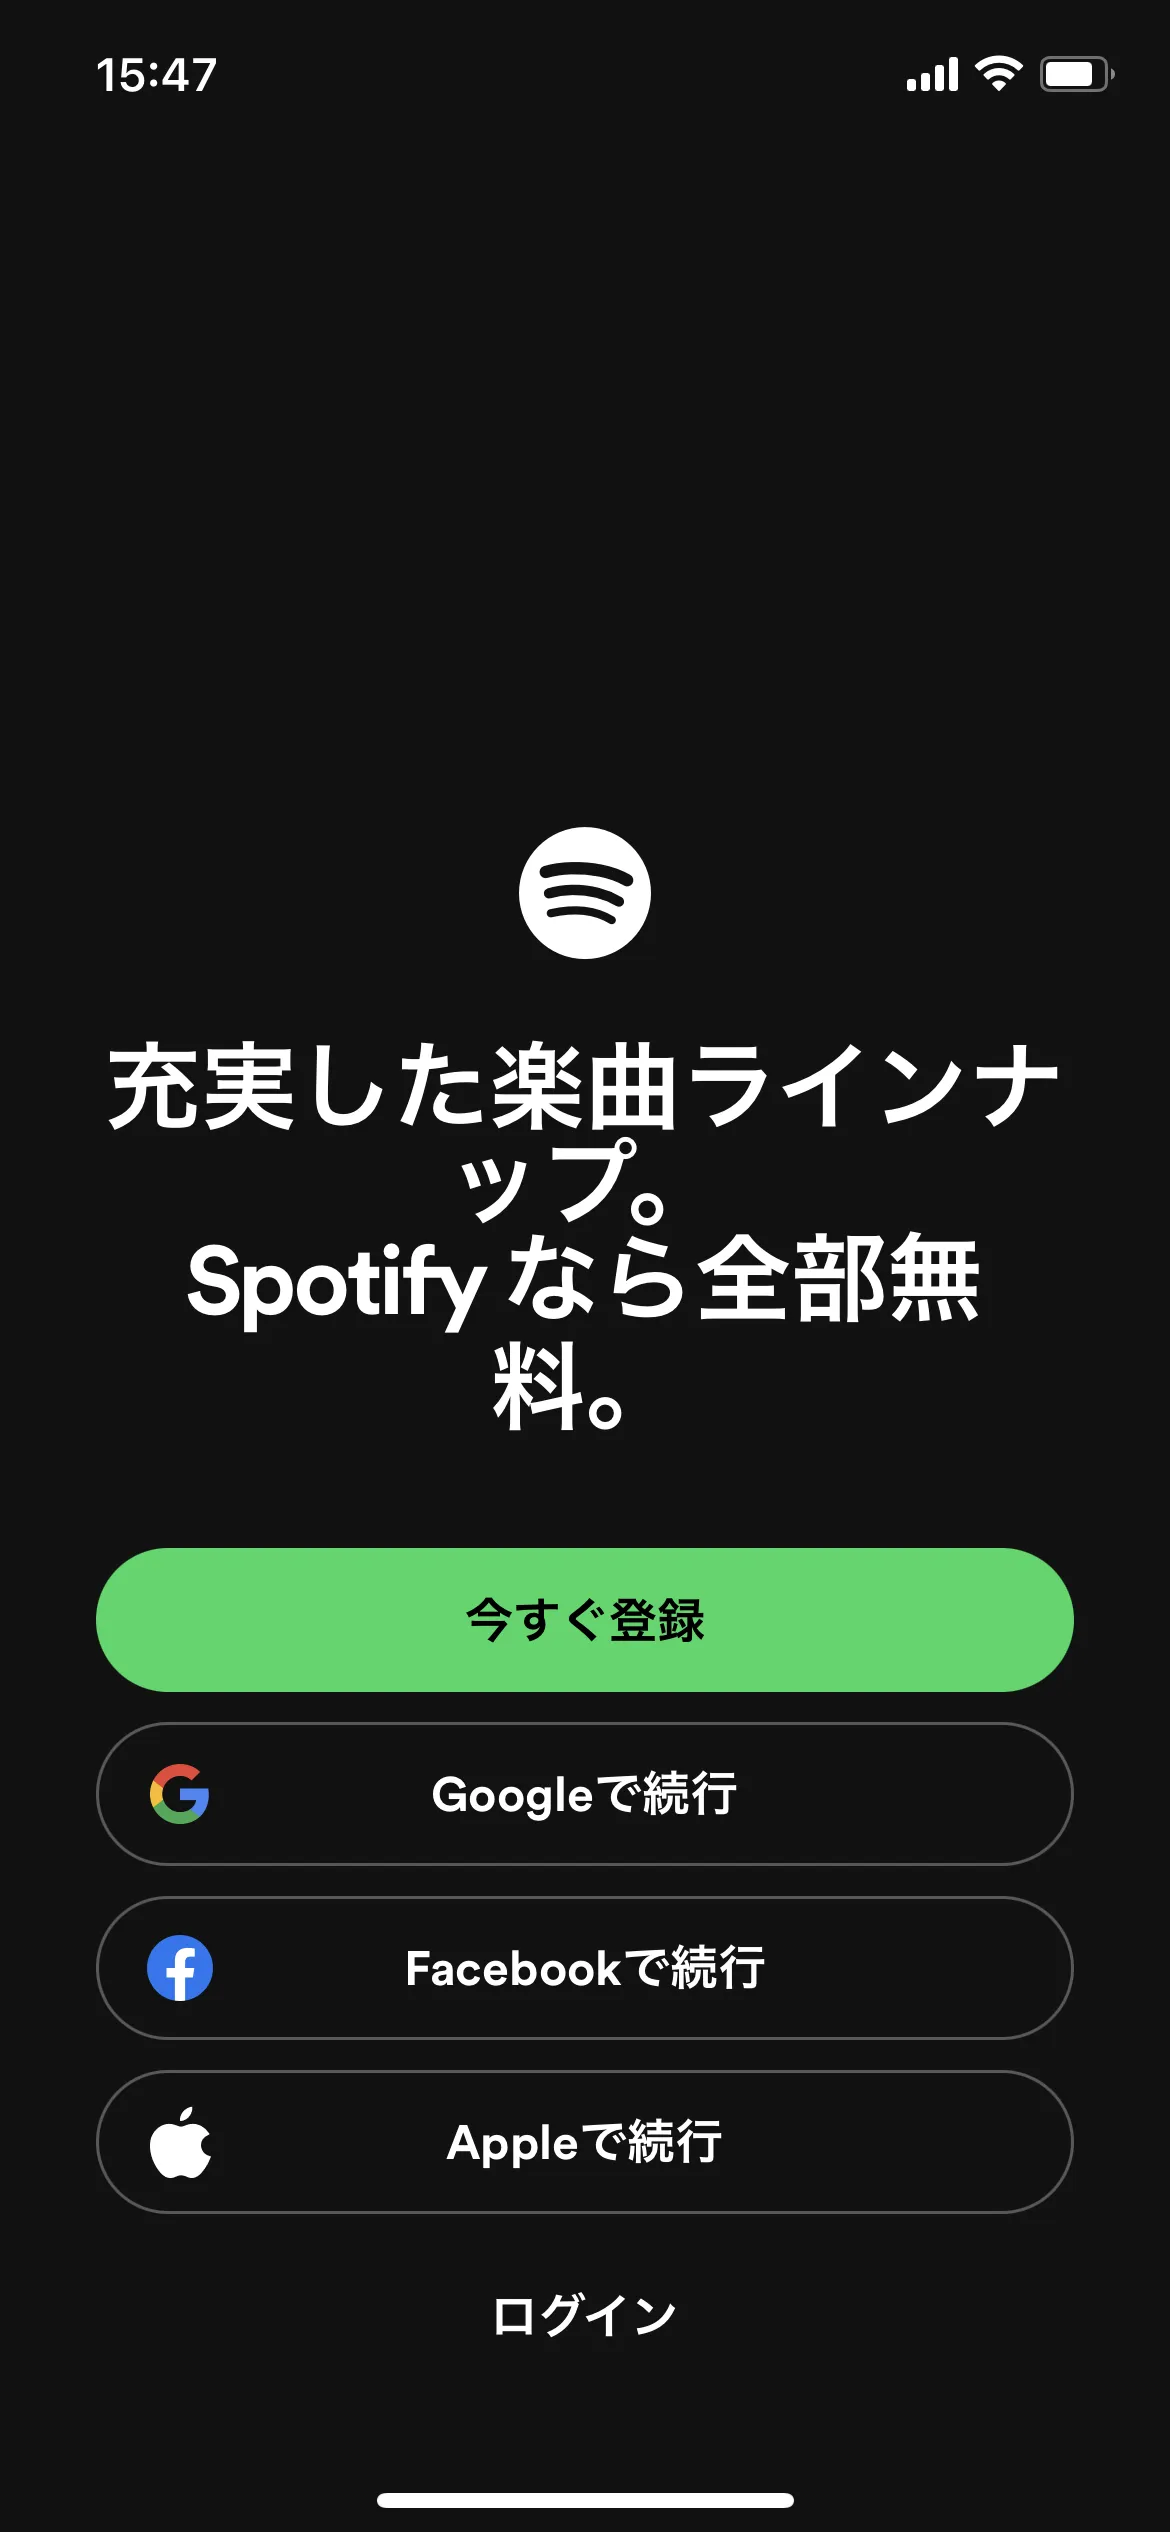 Spotify オンボーディング screen